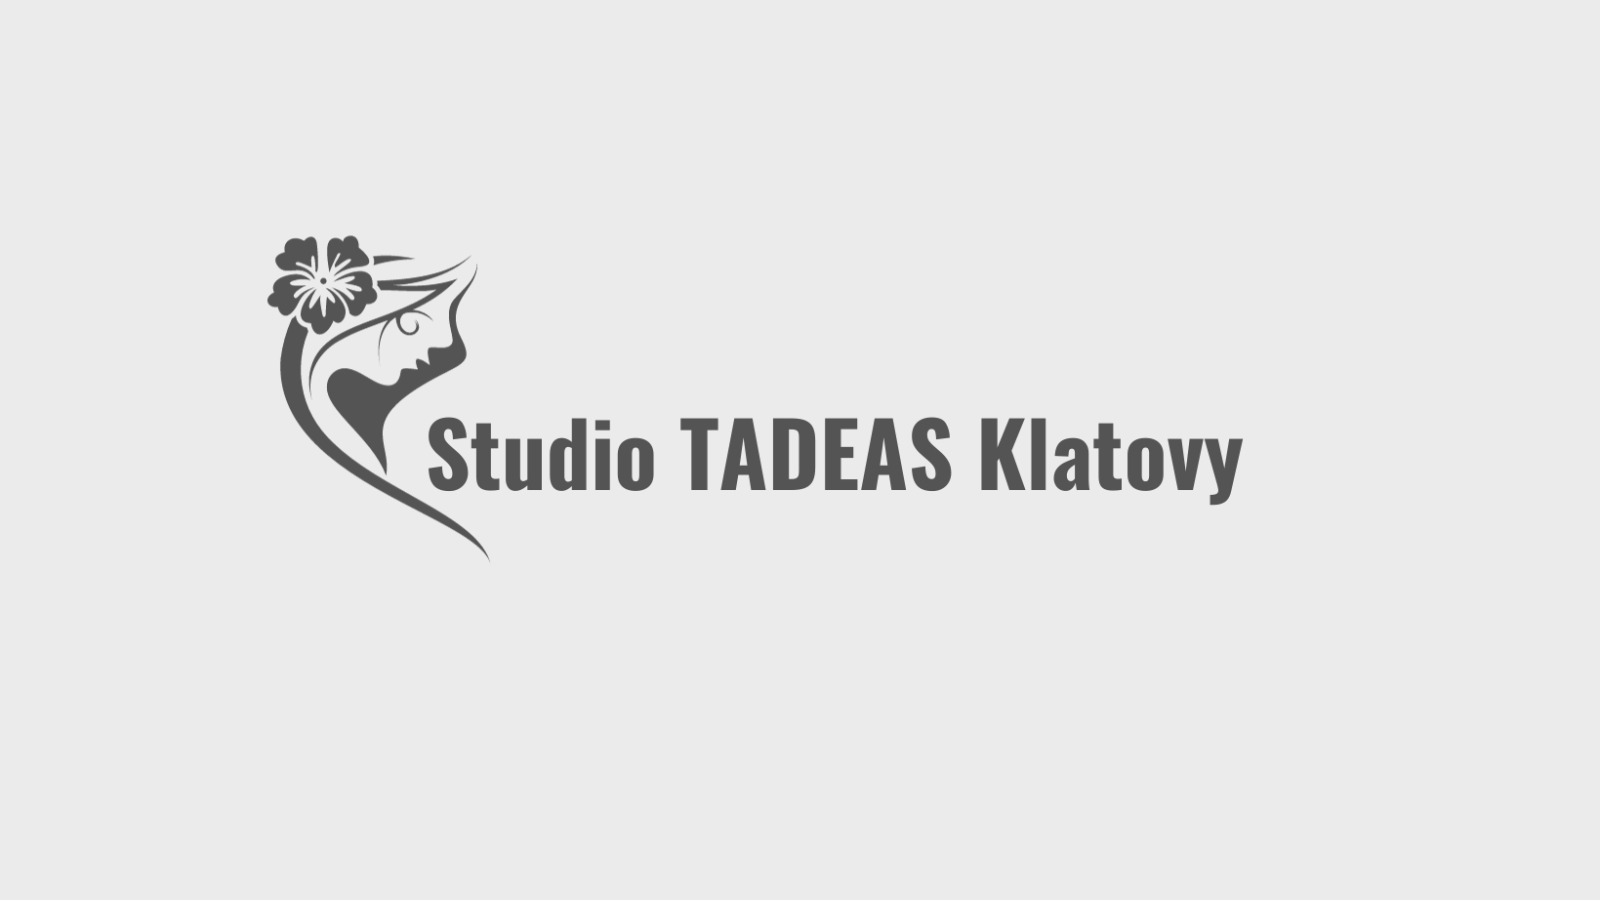 Studio Tadeas Klatovy